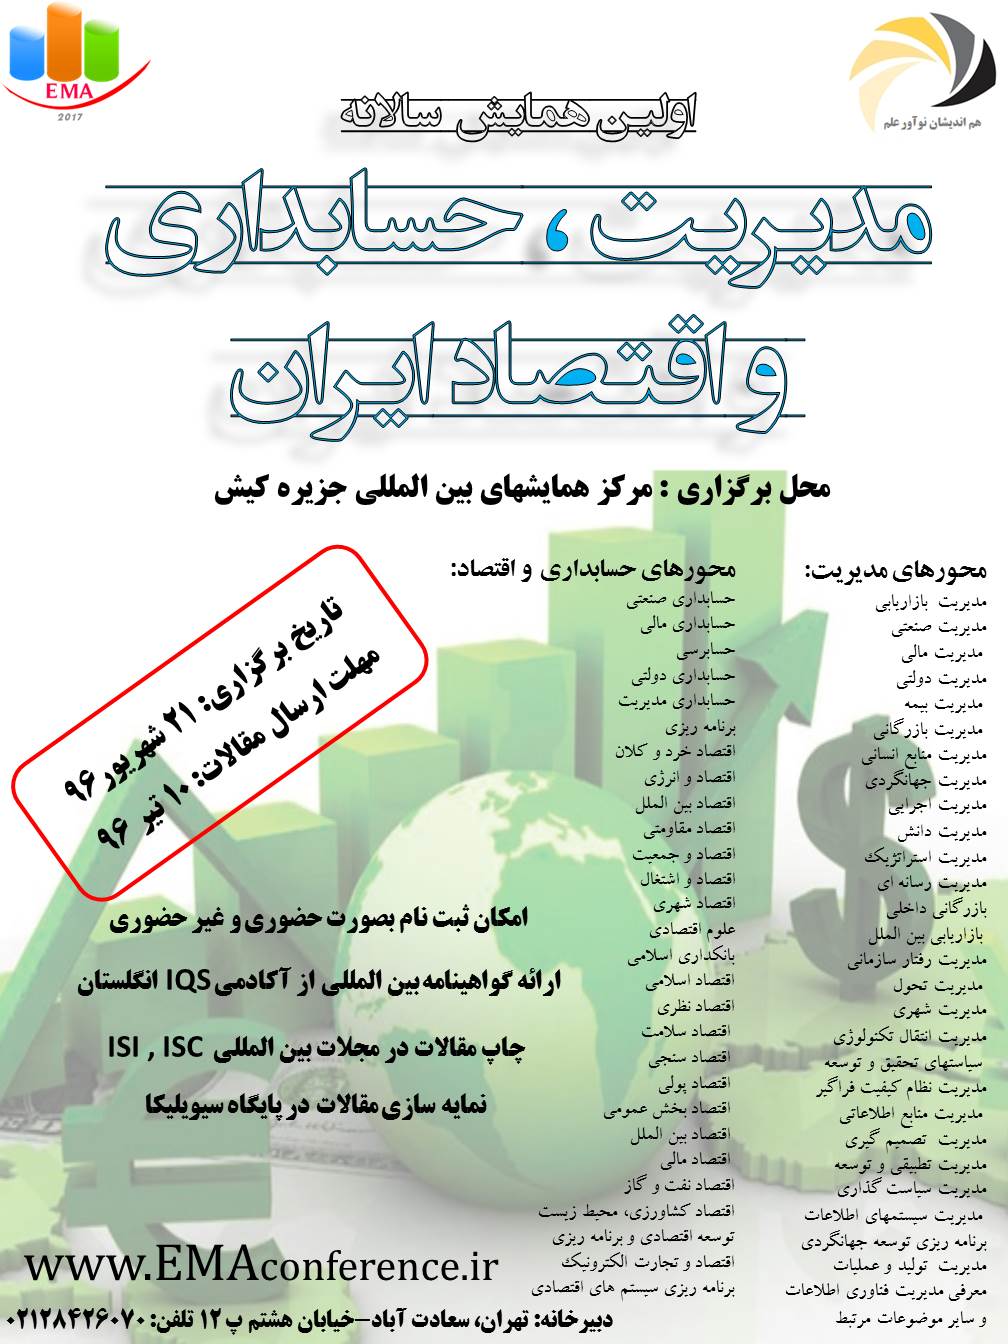 پوستر اولین همایش سالانه مدیریت ، حسابداری و اقتصاد ایران